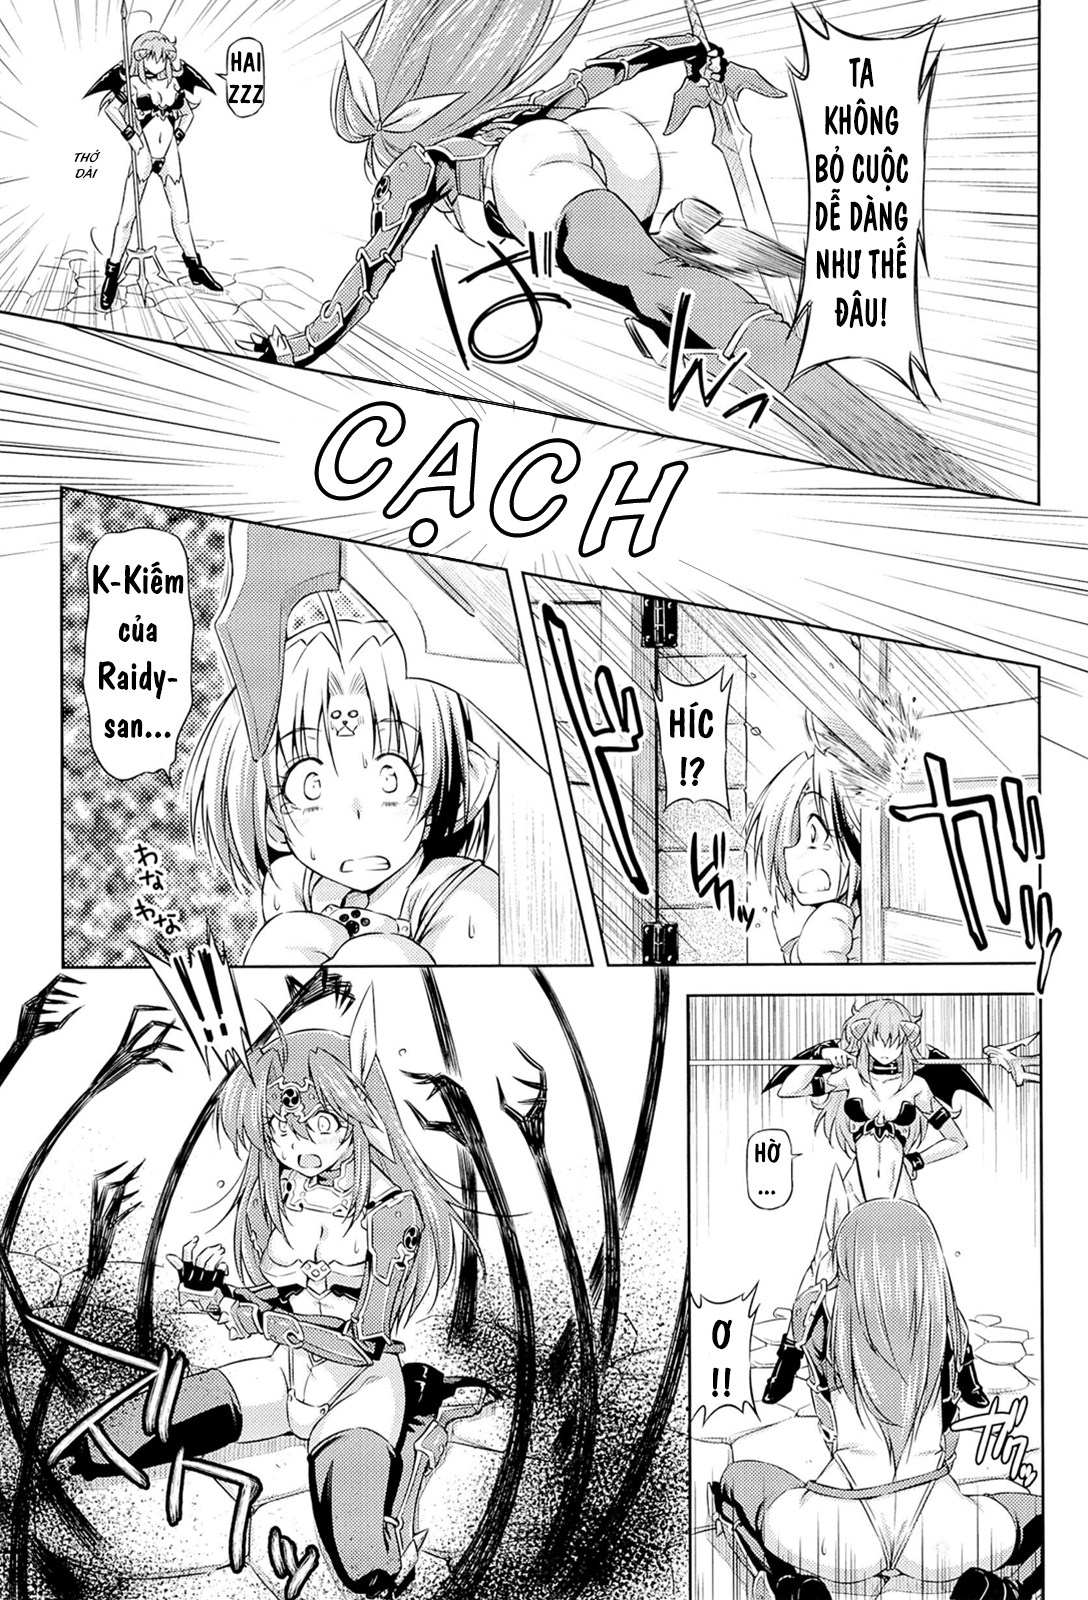 Ikazuchi no Senshi Raidy ~Haja no Raikou Chương 6 Trang 5